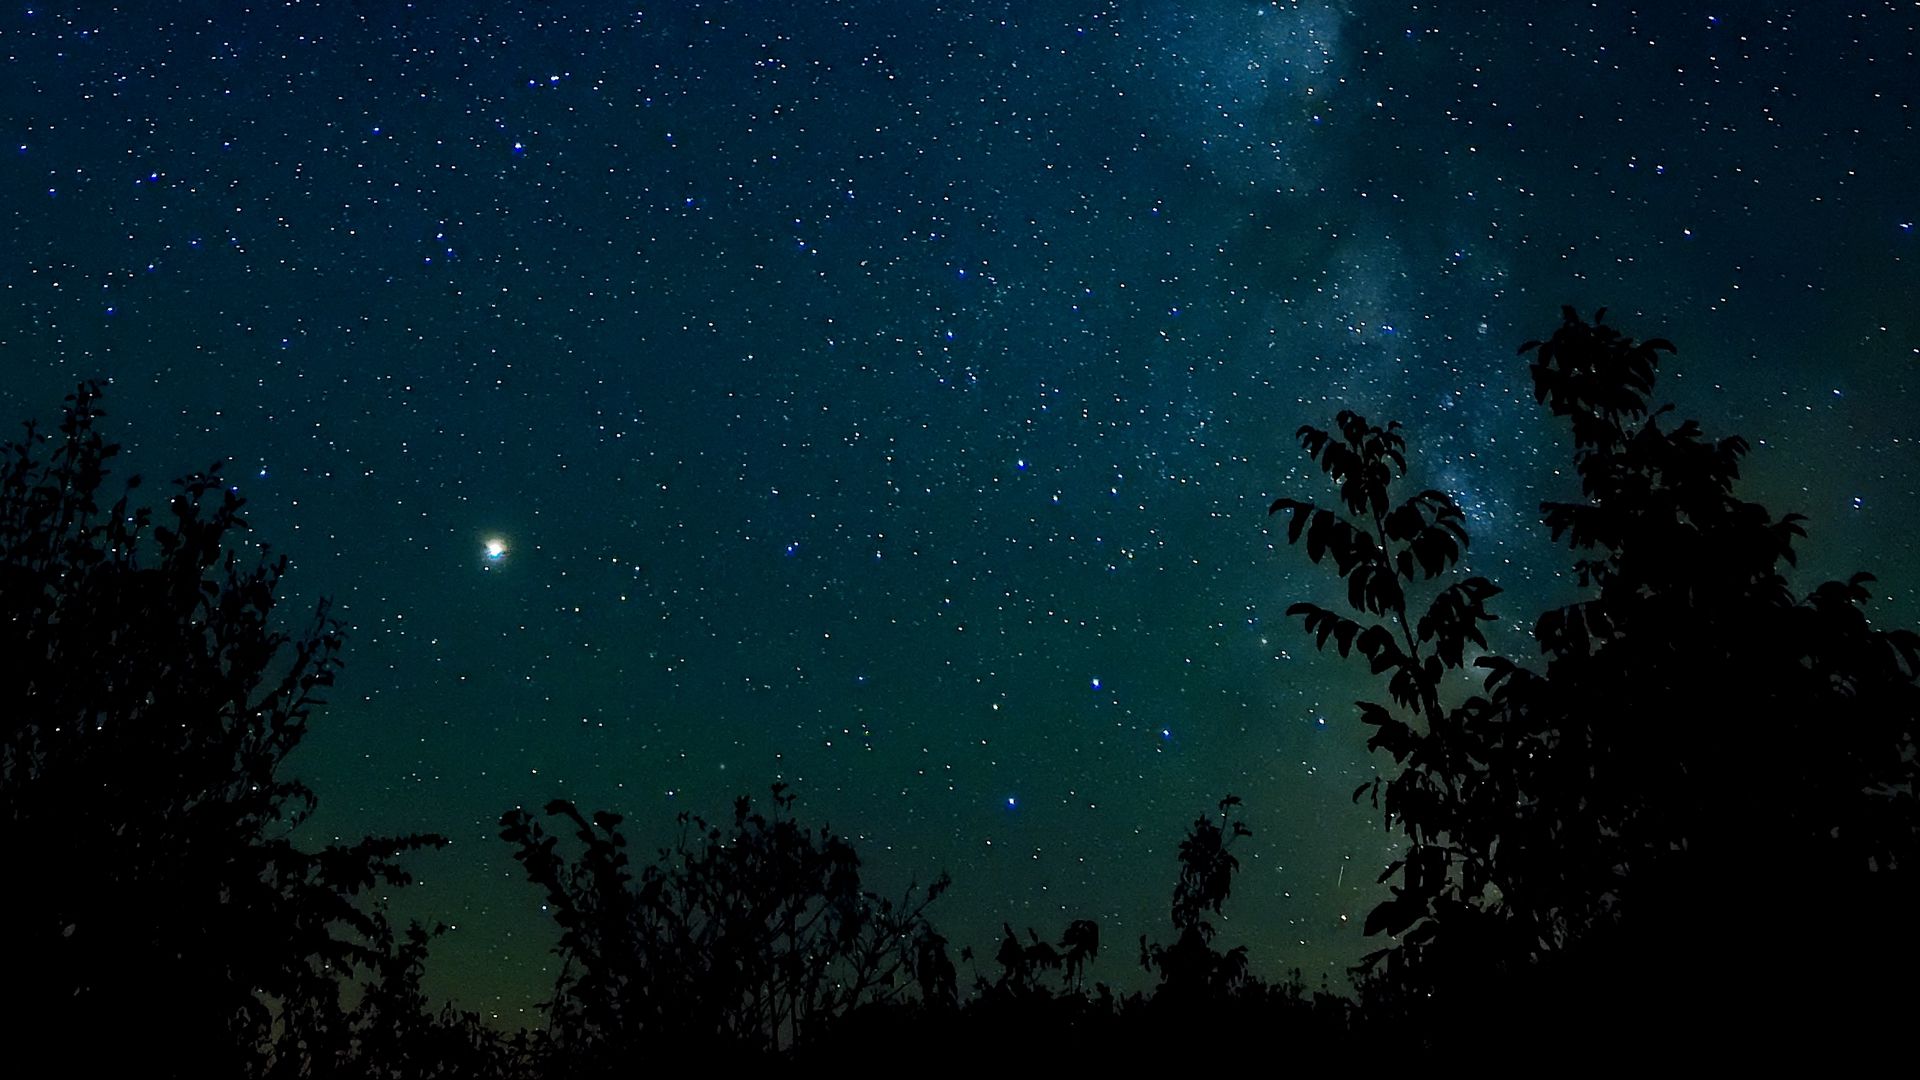 Tận hưởng khung cảnh đêm đầy ngấn lệ của bầu trời sao và tâm hồn bạn sẽ được thăng hoa. Hình nền Starry sky sẽ đưa bạn về với một không gian thần tiên và đầy tràn cảm xúc.